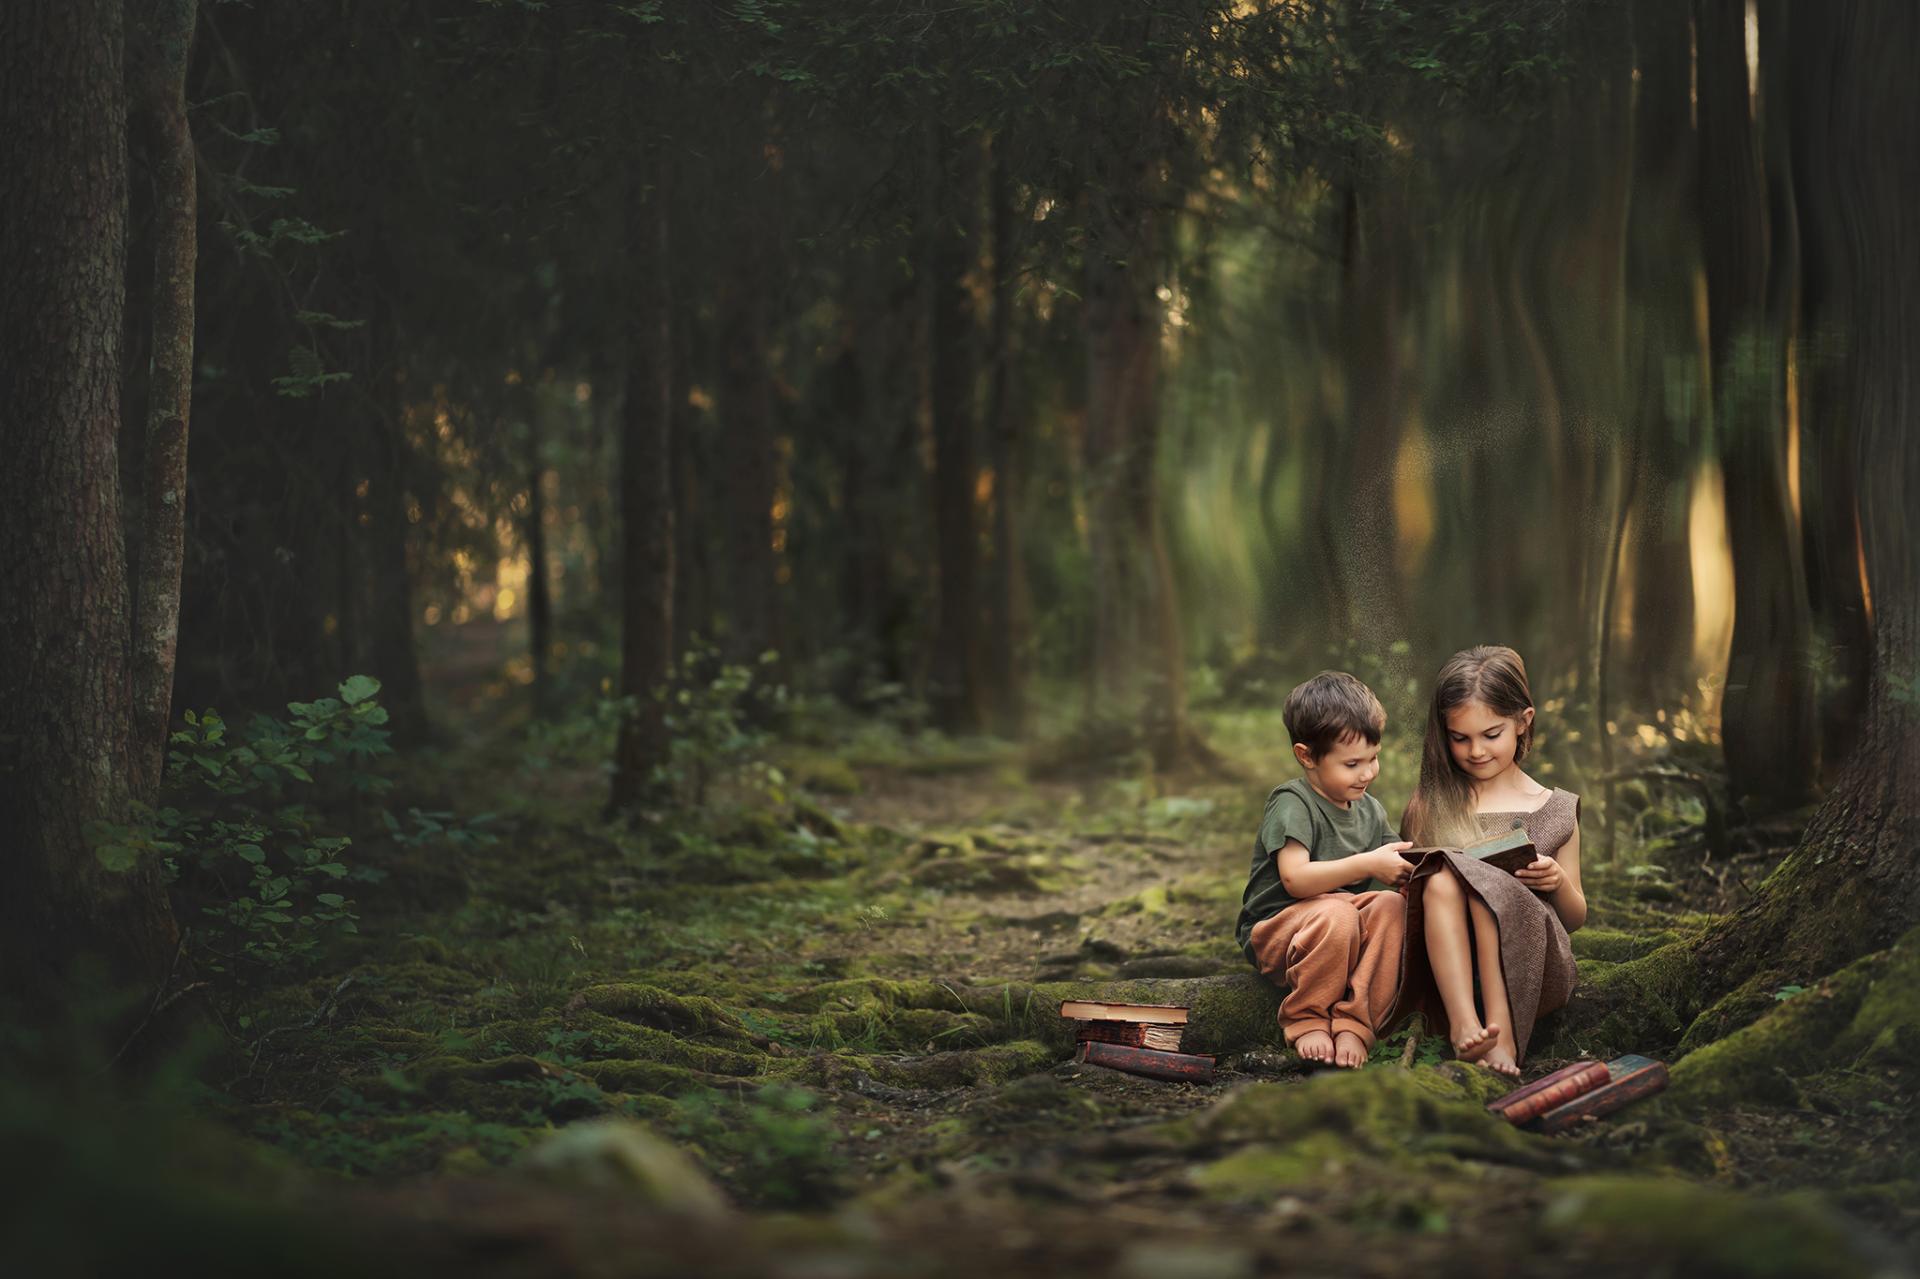 European Photography Awards Winner - a fairytale forest